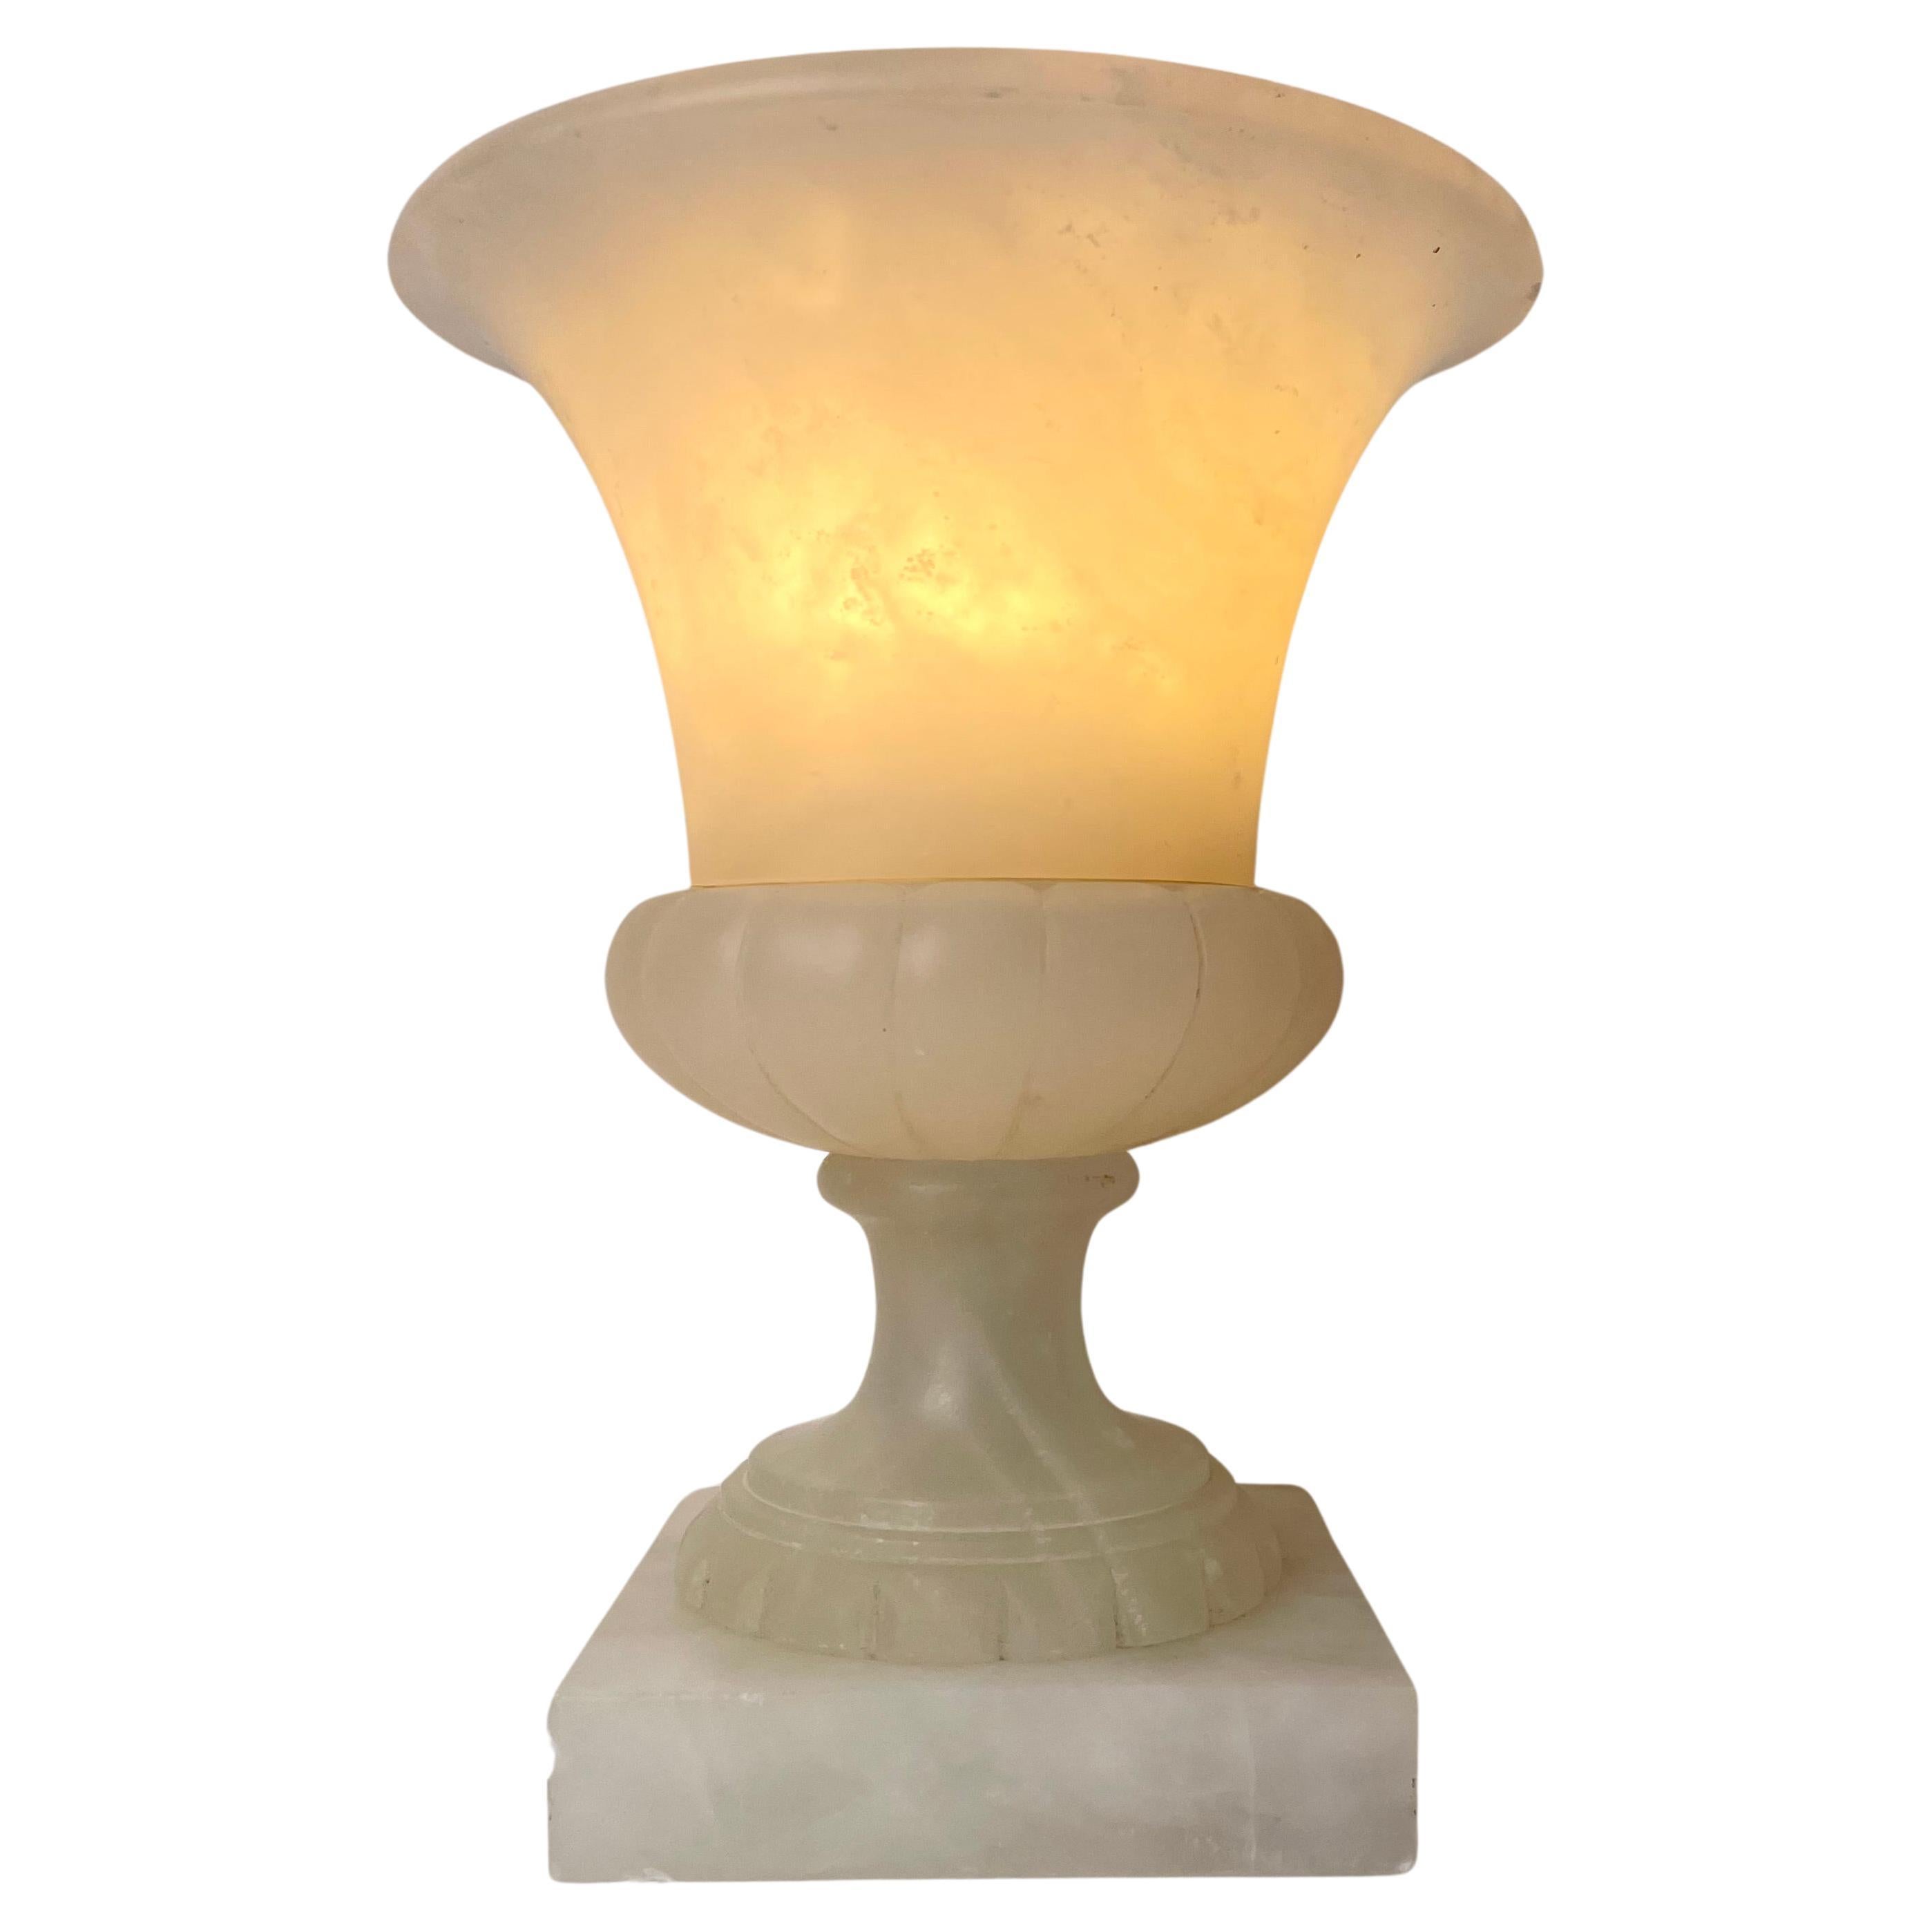 Lampe de table en forme d'urne en albâtre, probablement du début du 20e siècle